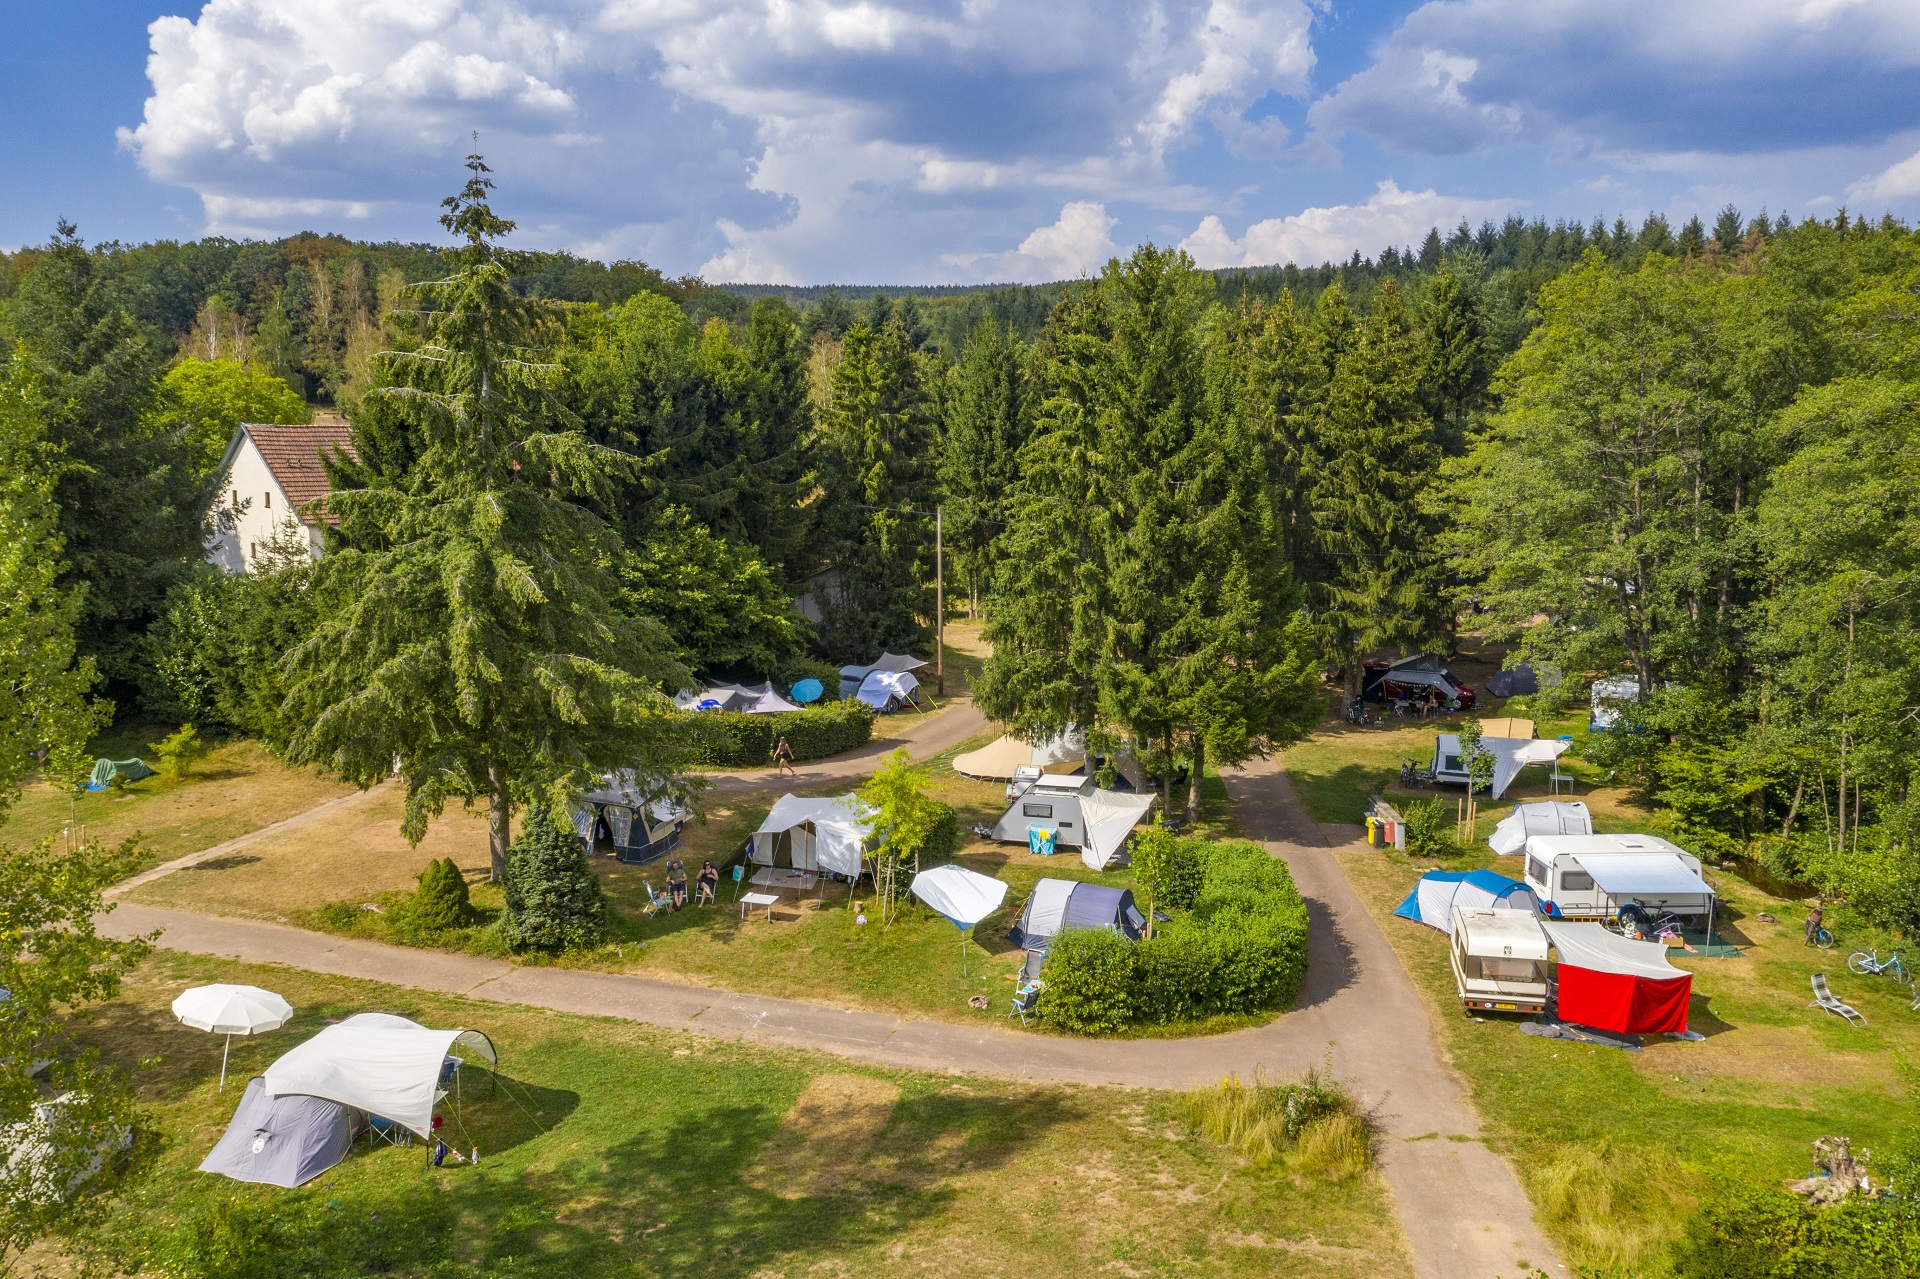 Eine Luftaufnahme des Campingplatzes mit Zelten und Campingmobilen.